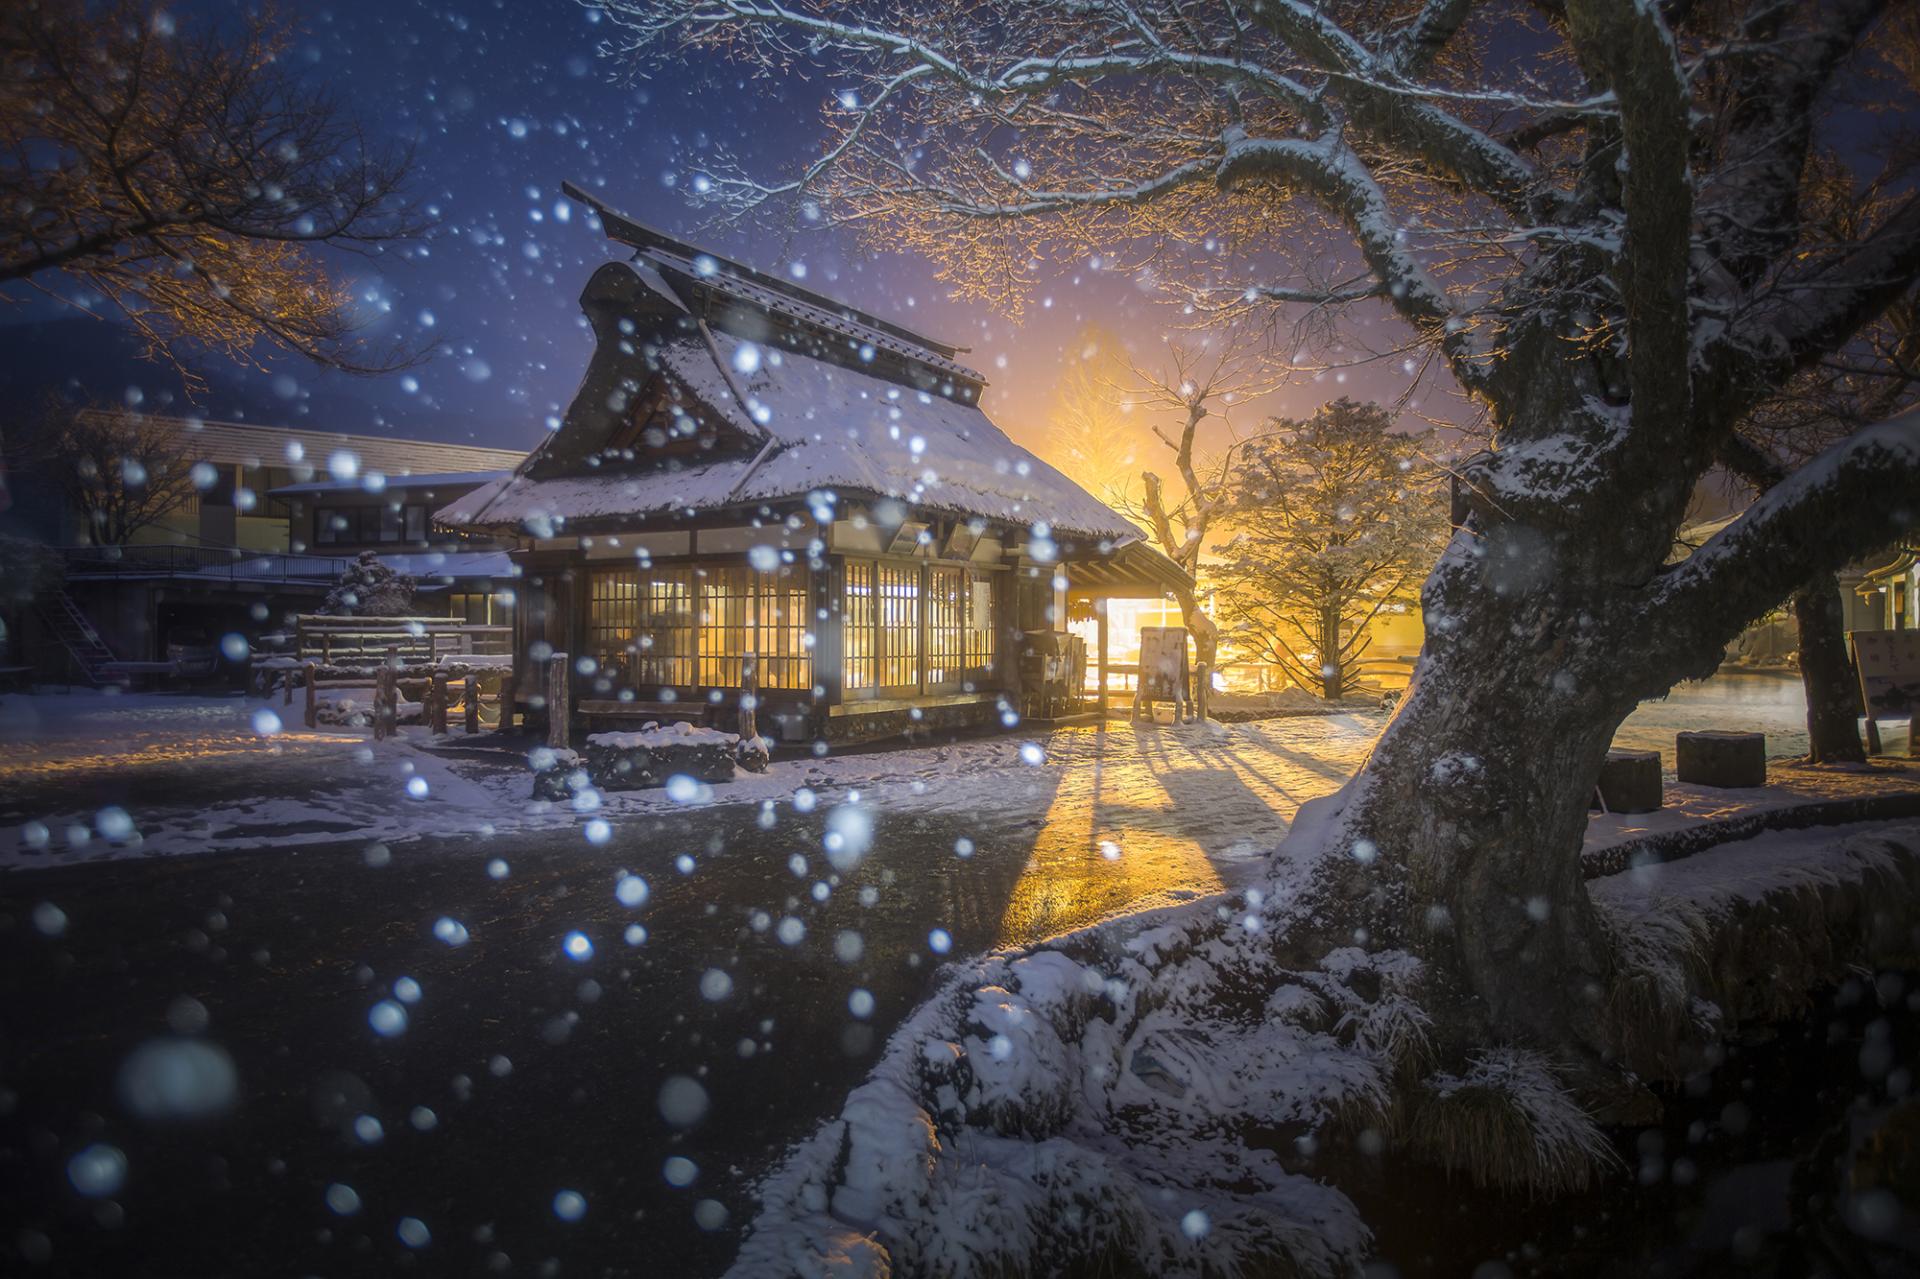 European Photography Awards Winner - Oshino Hakkai in the snow